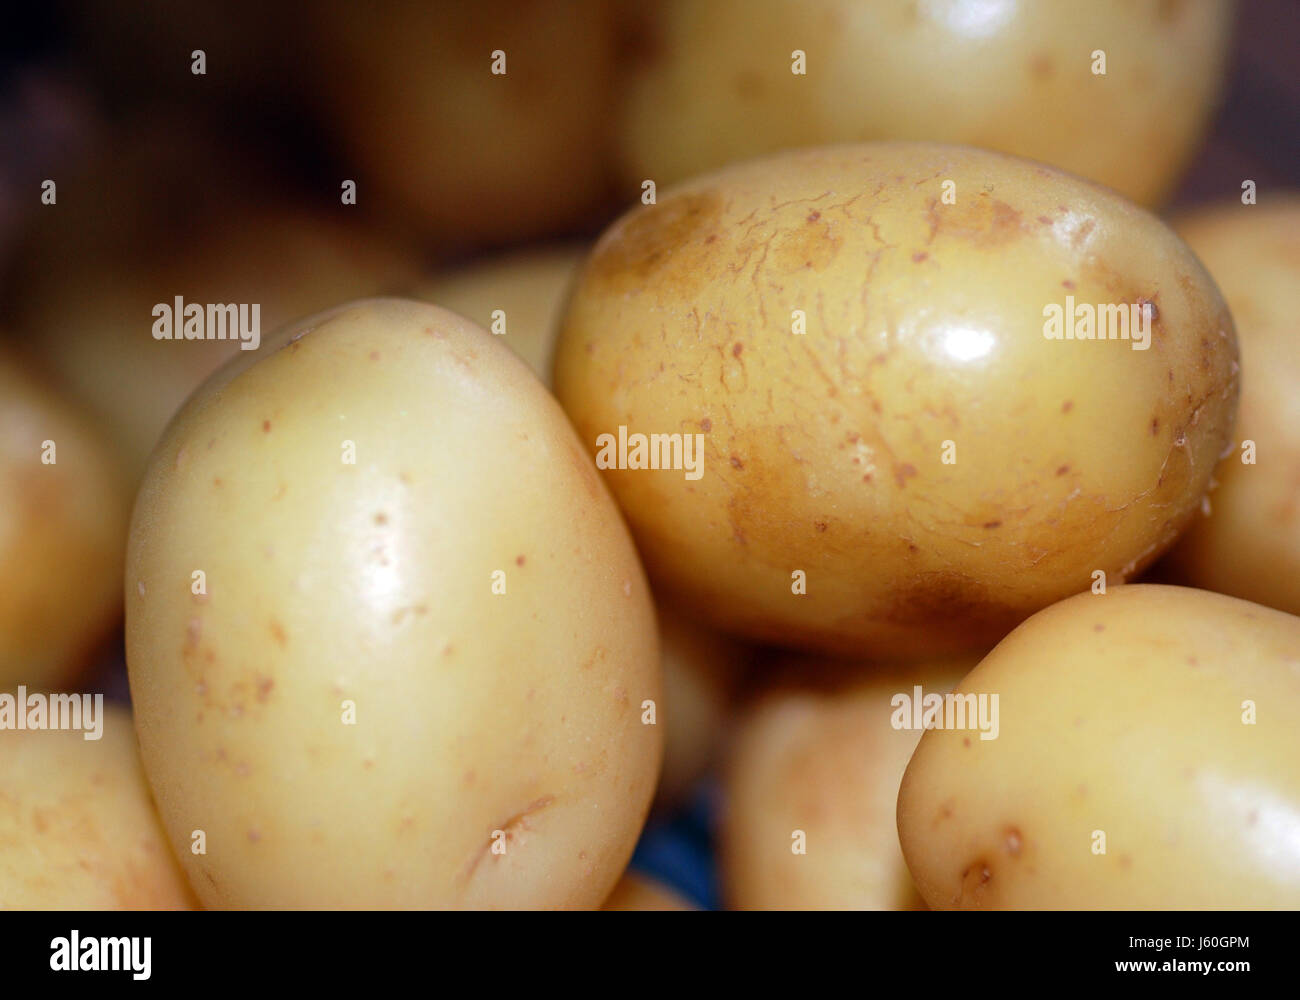 Aliment alimentaire pommes de terre nouvelles pommes de terre Fécule de pomme de spud glucides nutrition Banque D'Images